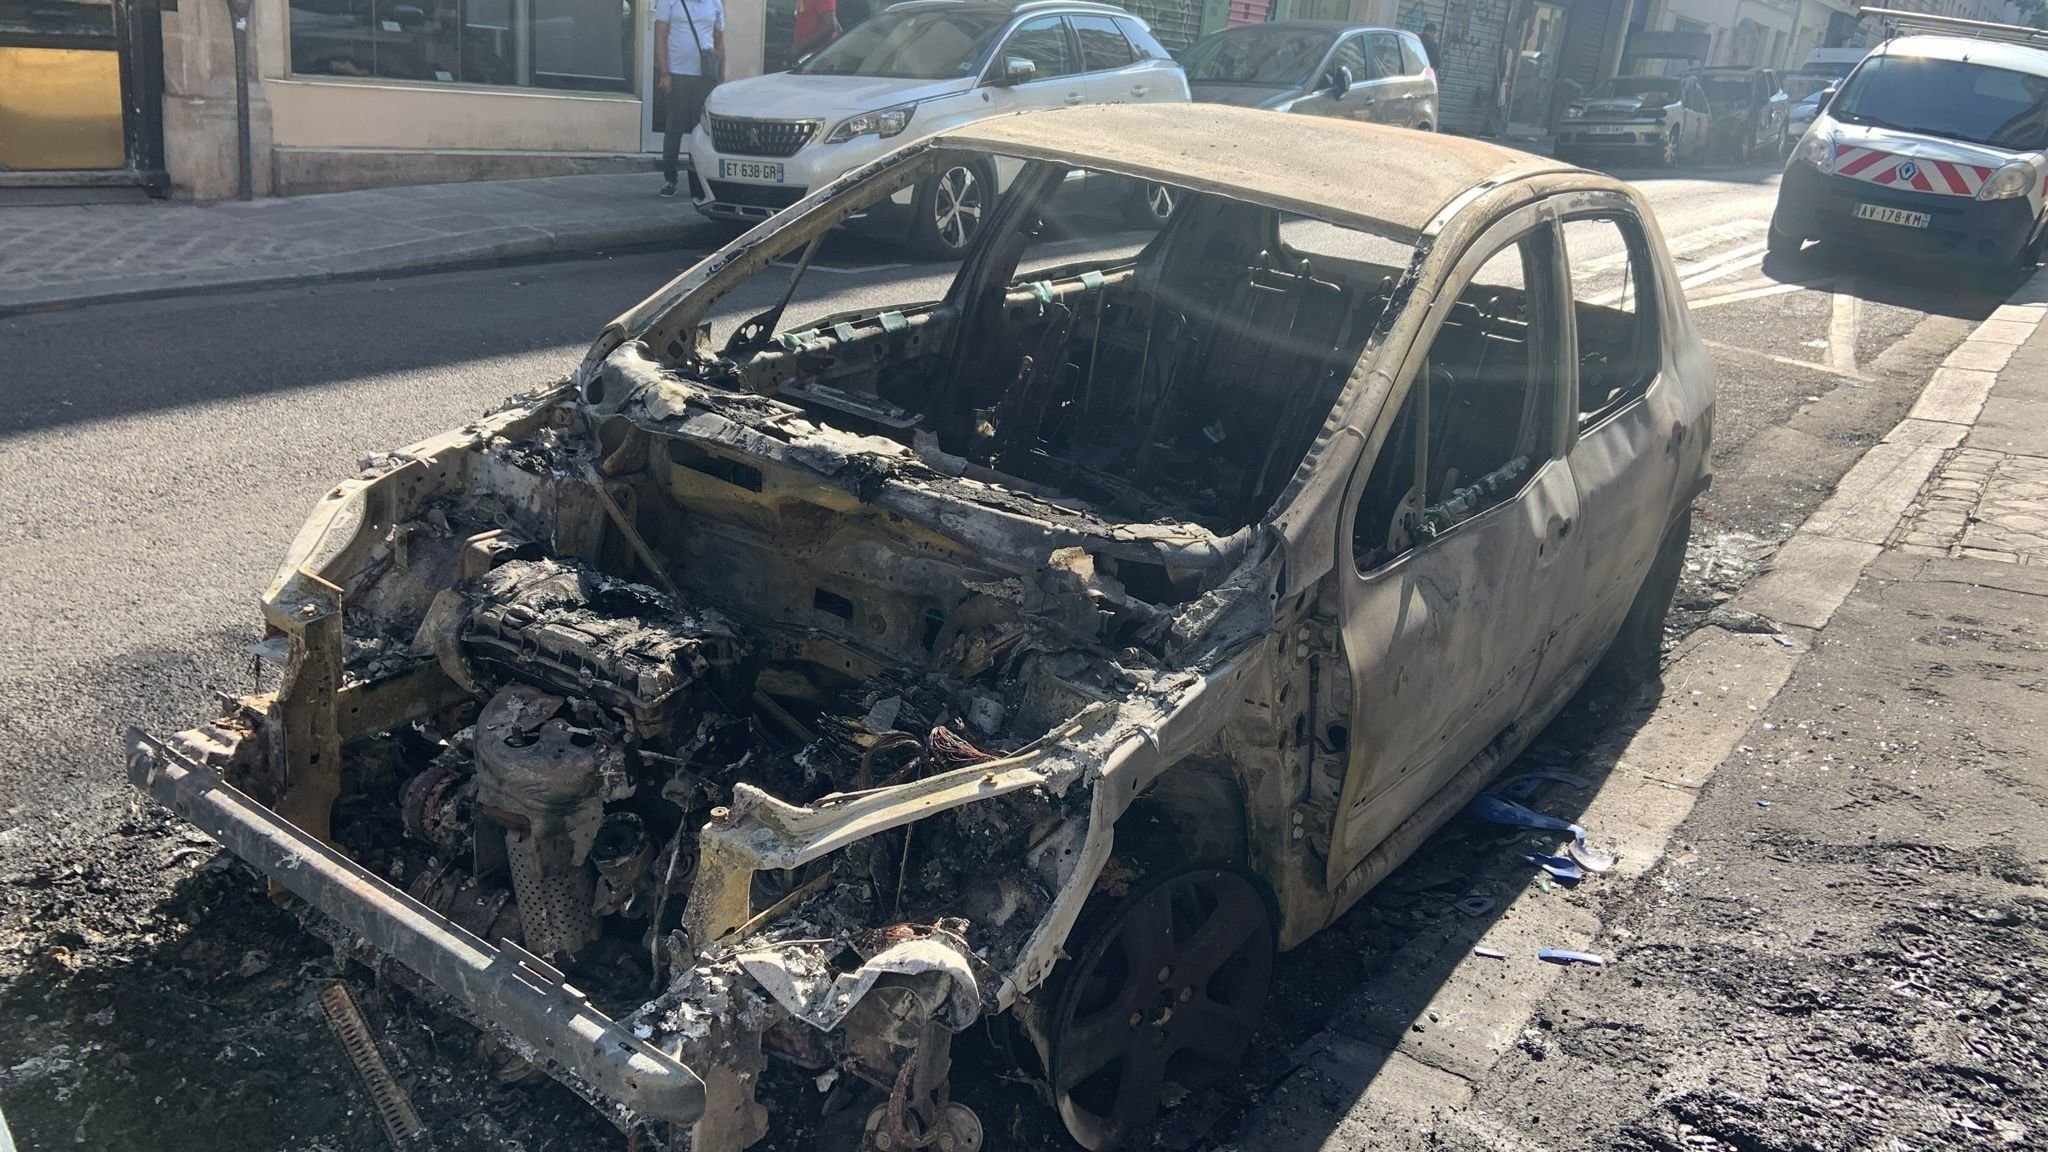 Une vingtaine de véhicules ont été incendiés en mai et juin dans le IIIe arrondissement de Paris. Une quarantaine de victimes ont été recensées. DR